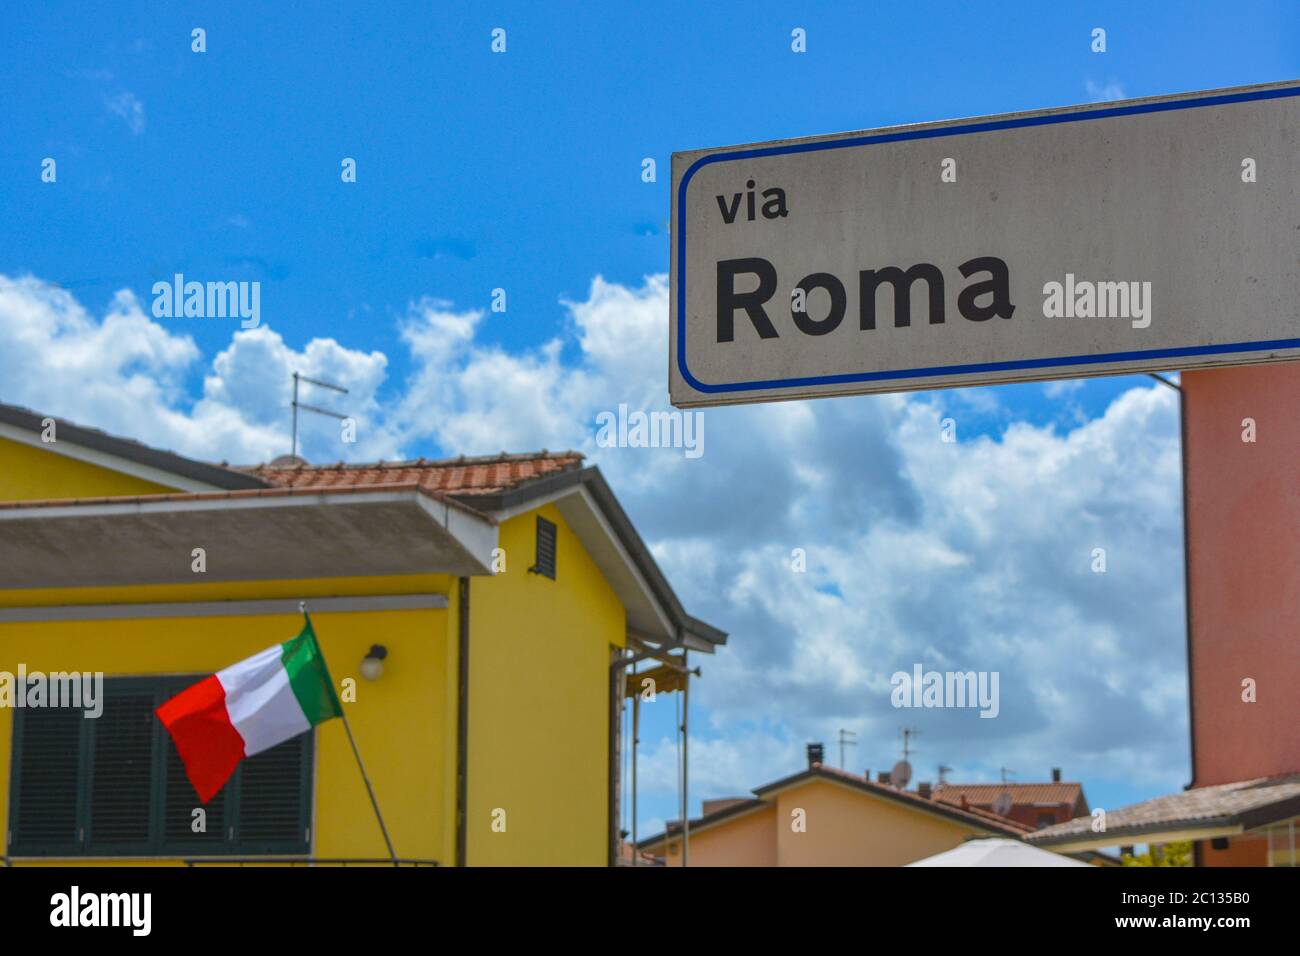 Patriotische Szene aus Italien: Rom Straße (Via Roma), die italienische Flagge (tricolore) und ein tiefblauer italienischer Himmel mit typischen mediterranen Häusern Stockfoto